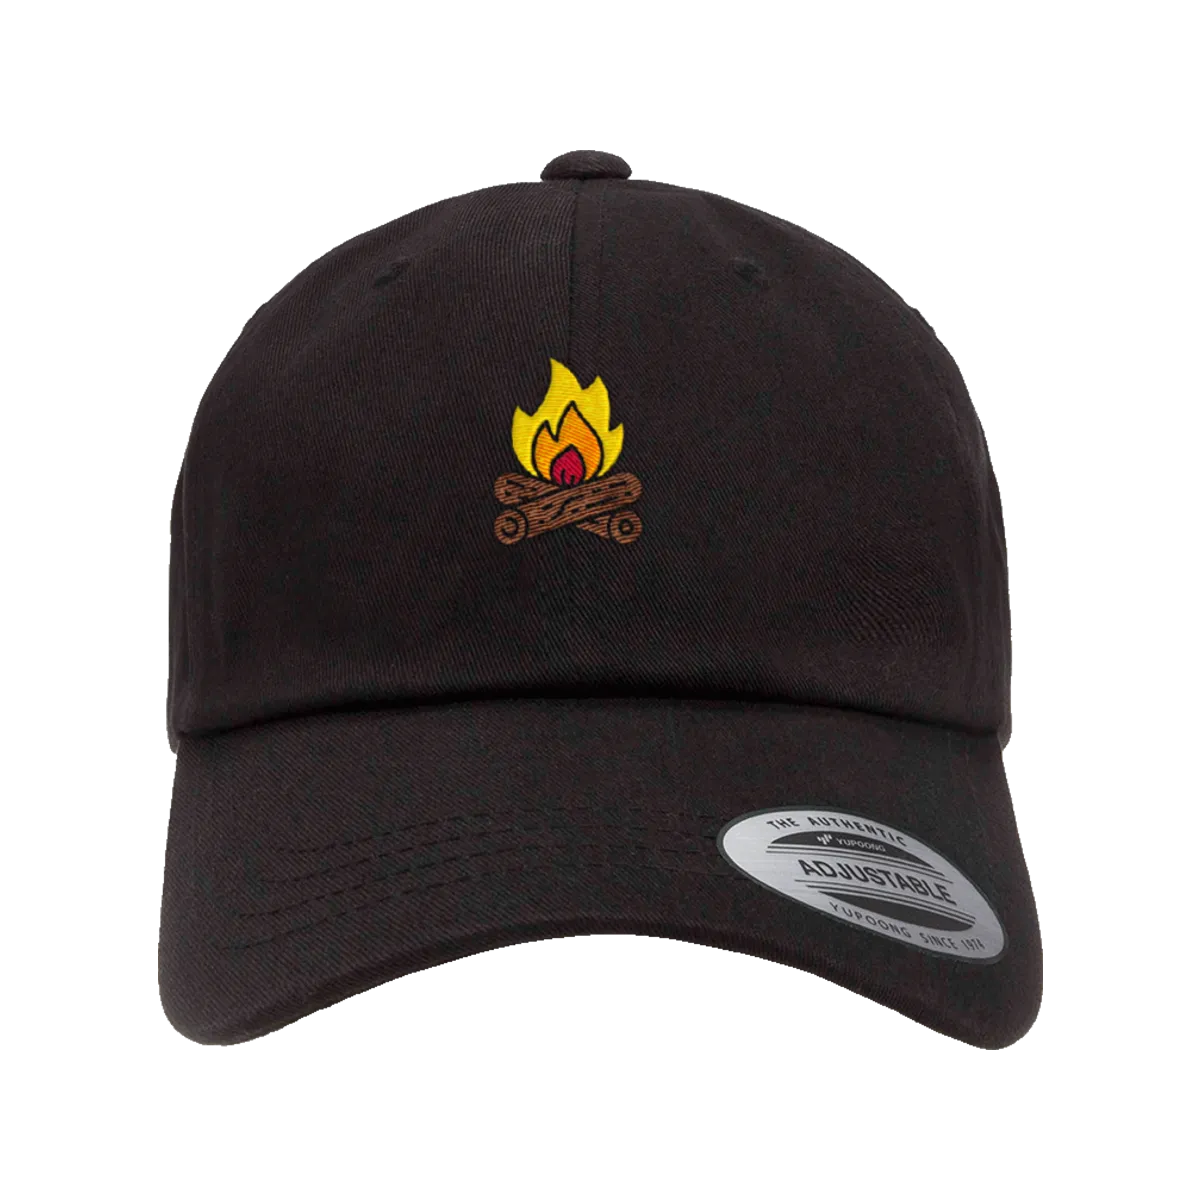 Campfire” graphic dad hat, trucker hat, snapback hat, trucker hat